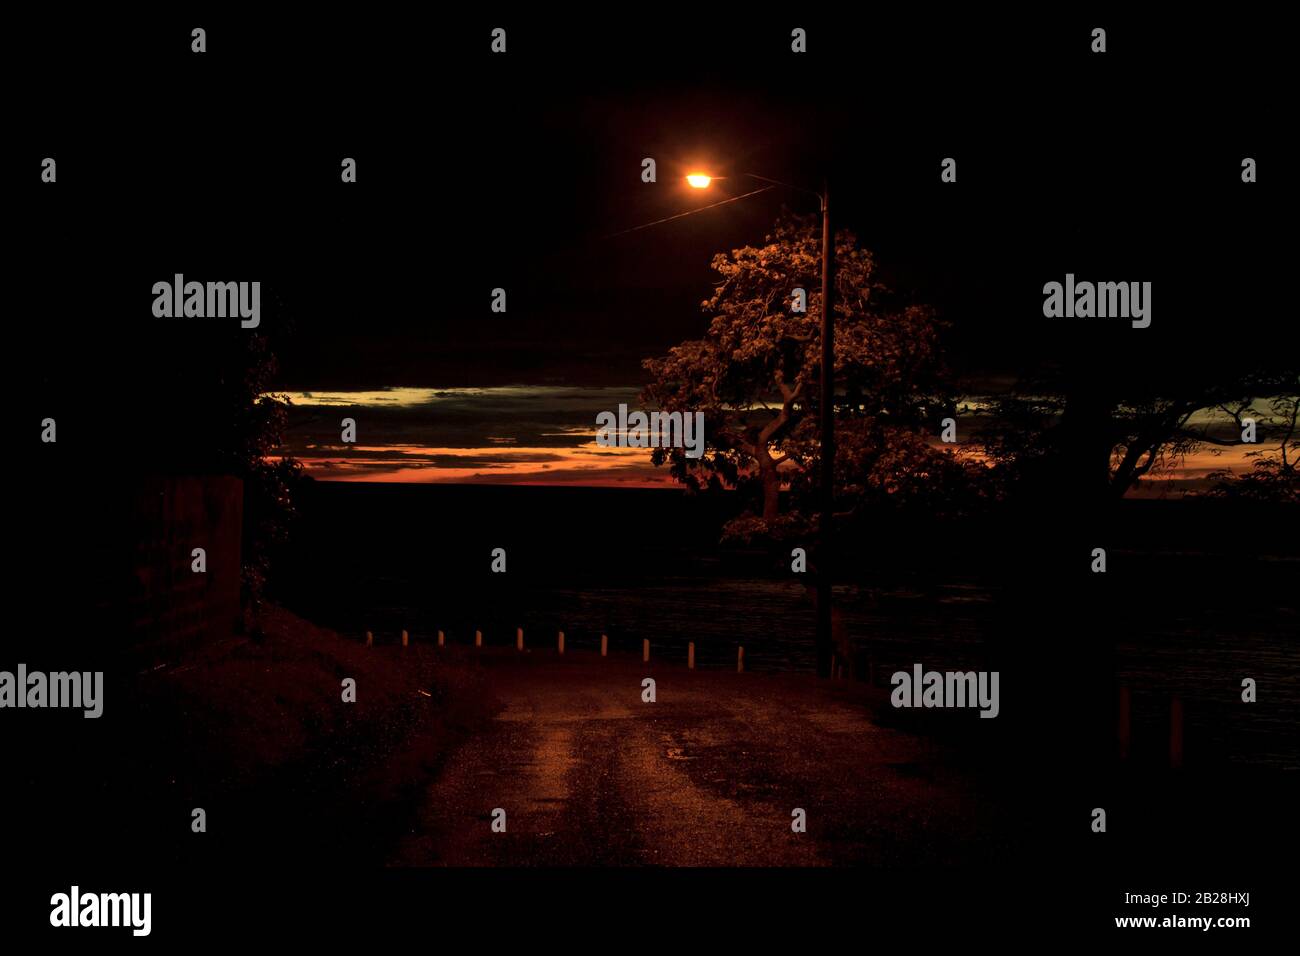 Nuit sombre, route solitaire, lumière jaune de la seule lampe de rue, poteaux blancs au bord, restes d'un beau coucher de soleil sur la route de Tapion Banque D'Images